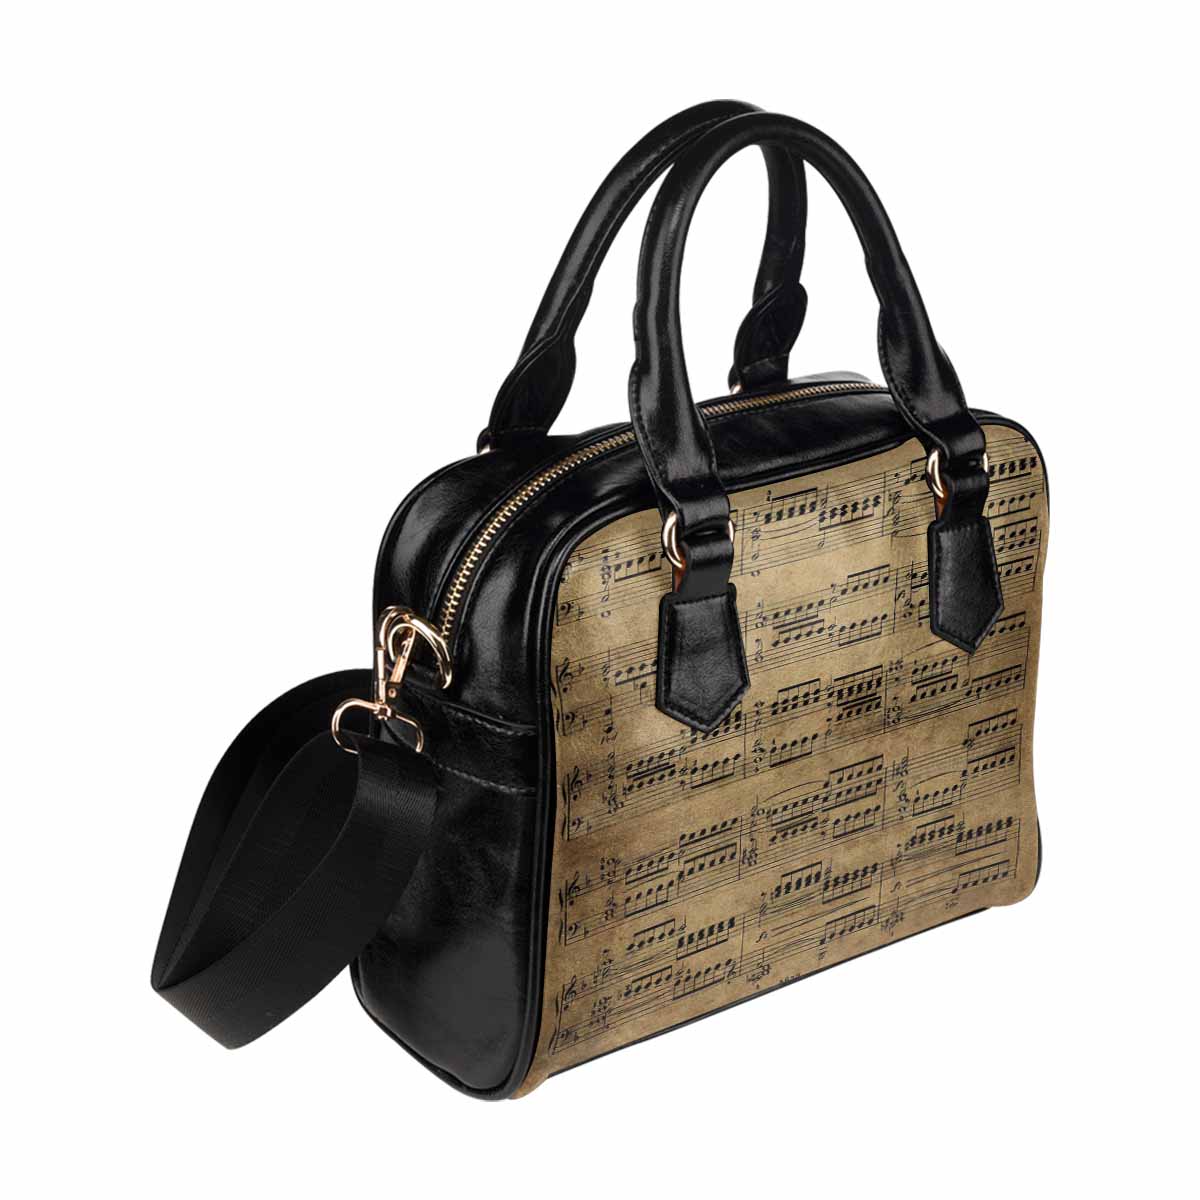 Antique general print handbag, MODEL1695341,Design 59